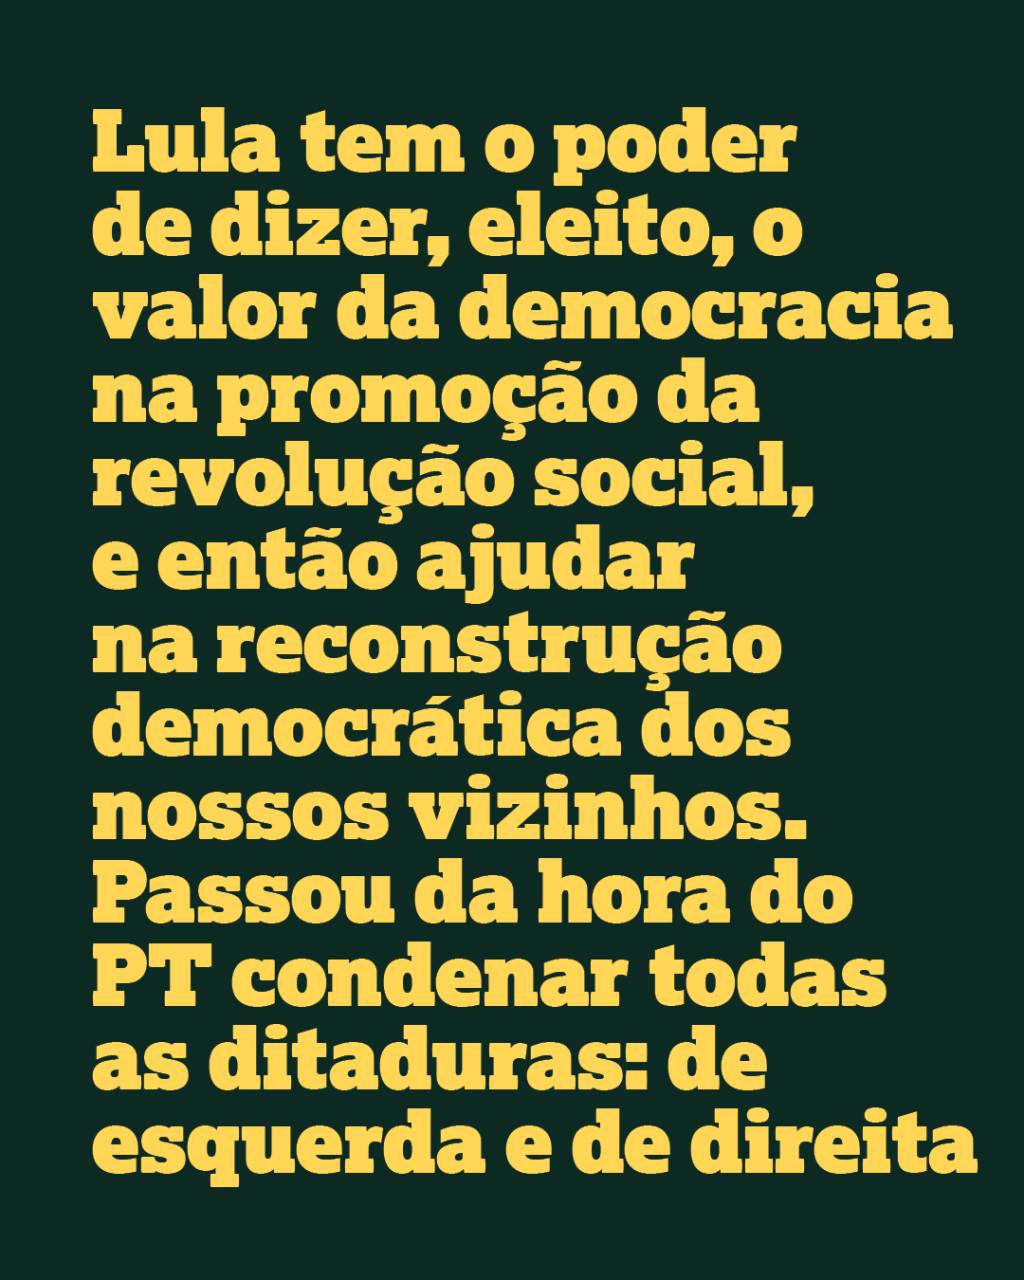 Lula tem o poder de dizer, eleito, o valor da democracia na promoção da revolução social, e então ajudar na reconstrução democrática dos nossos vizinhos. Passou da hora do PT condenar todas as ditaduras: de esquerda e de direita